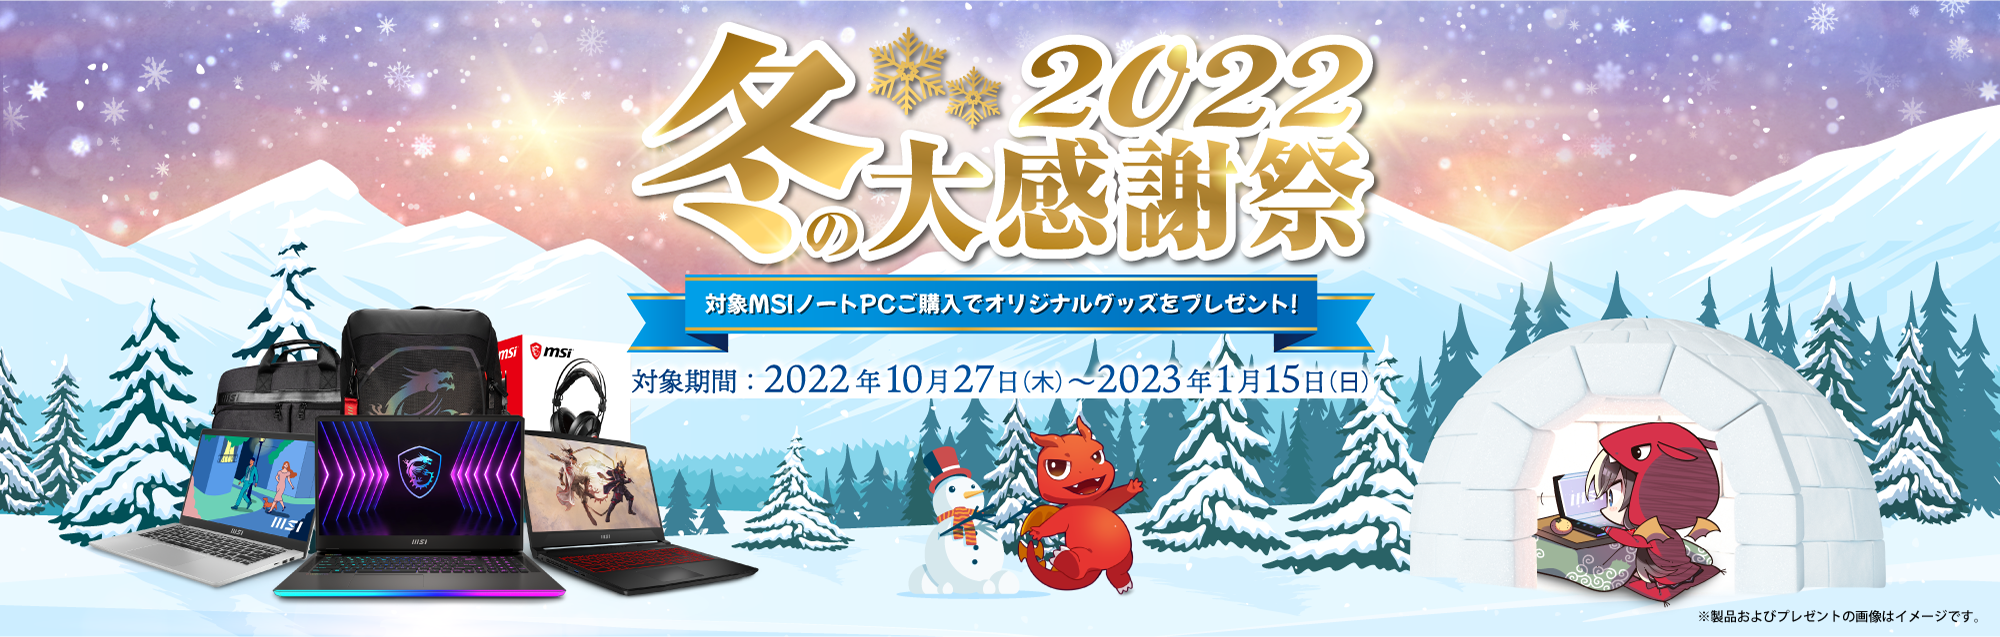 冬の大感謝祭2022